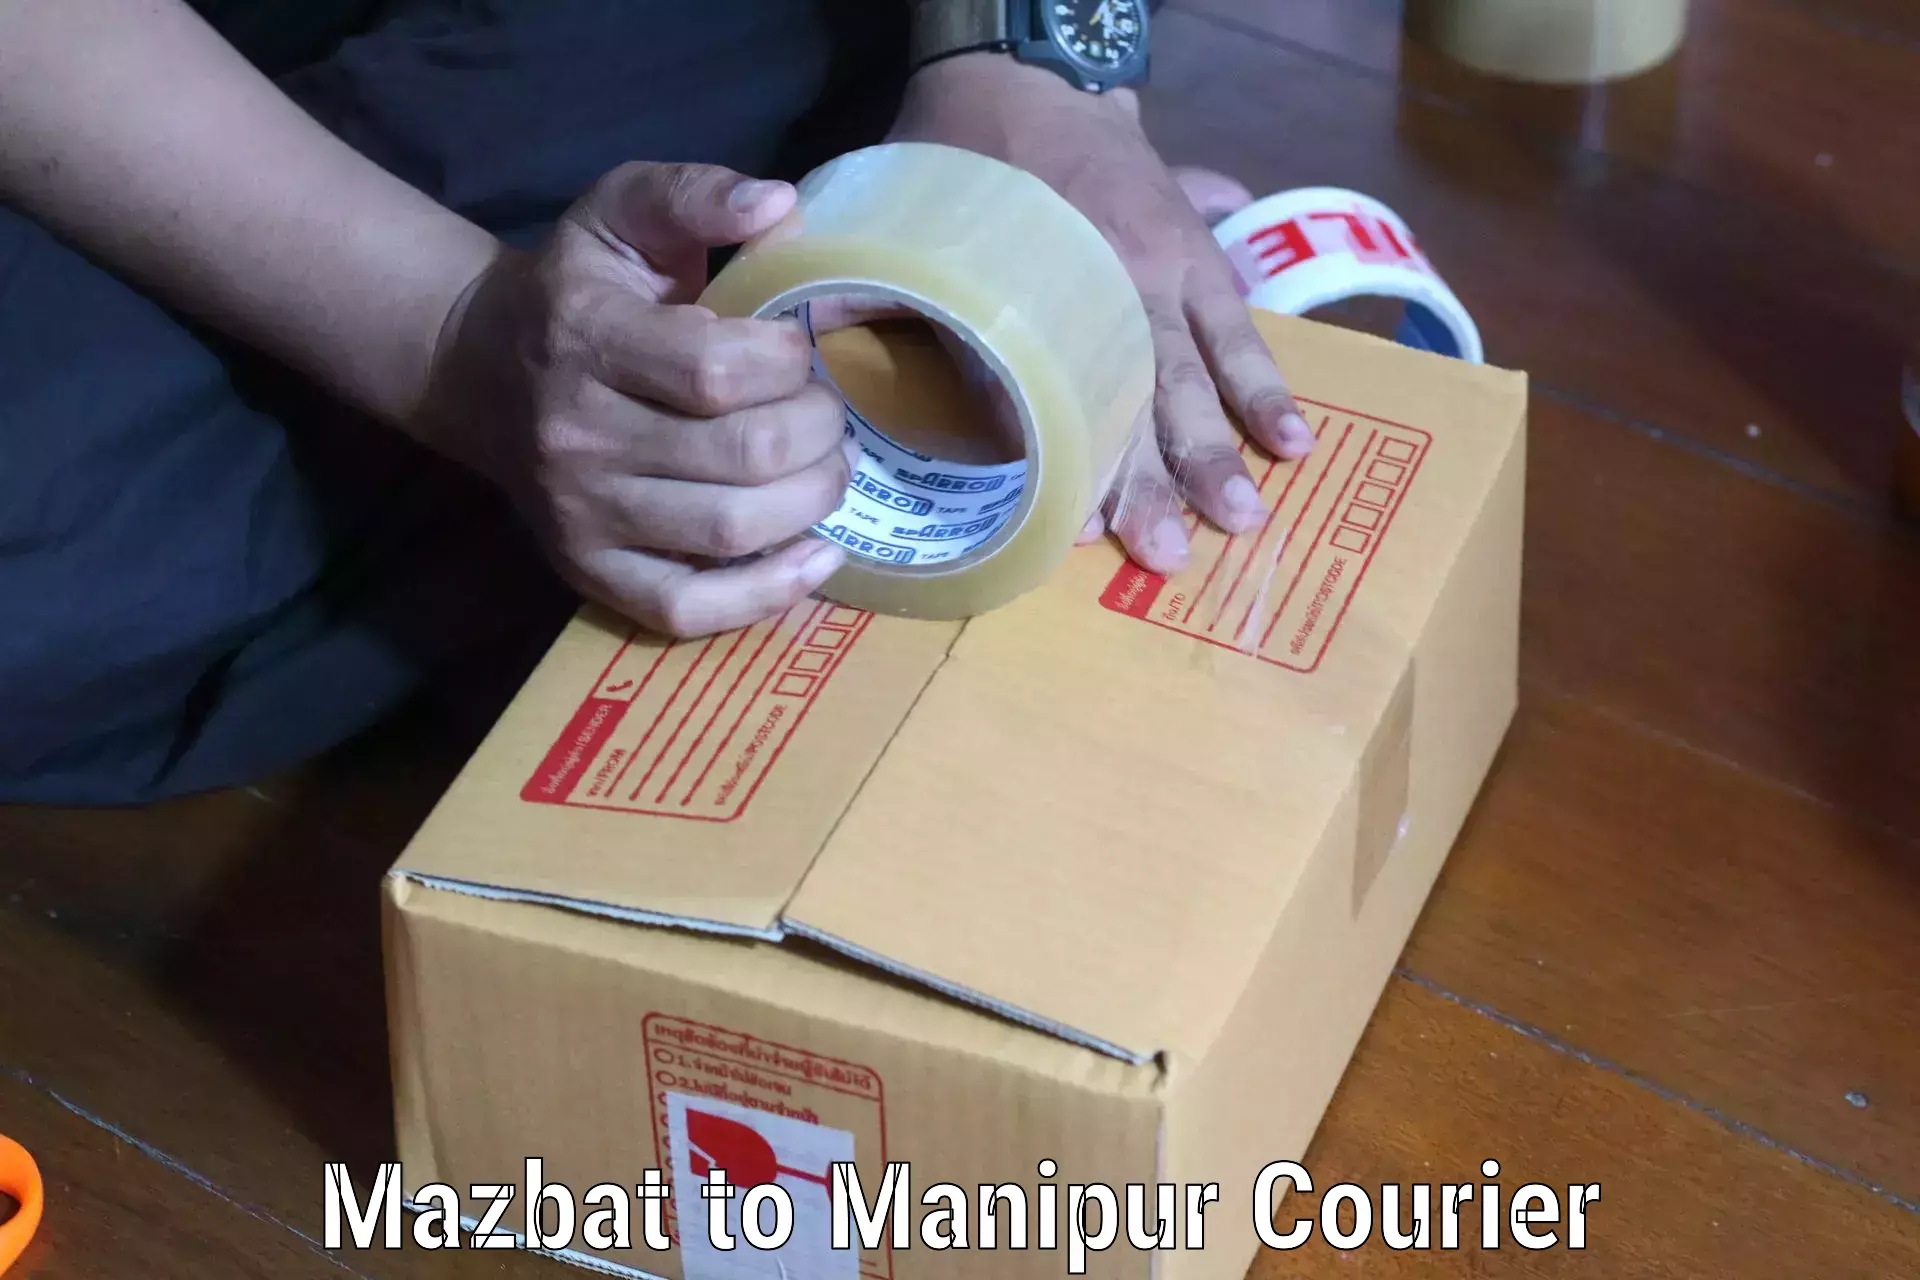 Premium courier services in Mazbat to NIT Manipur